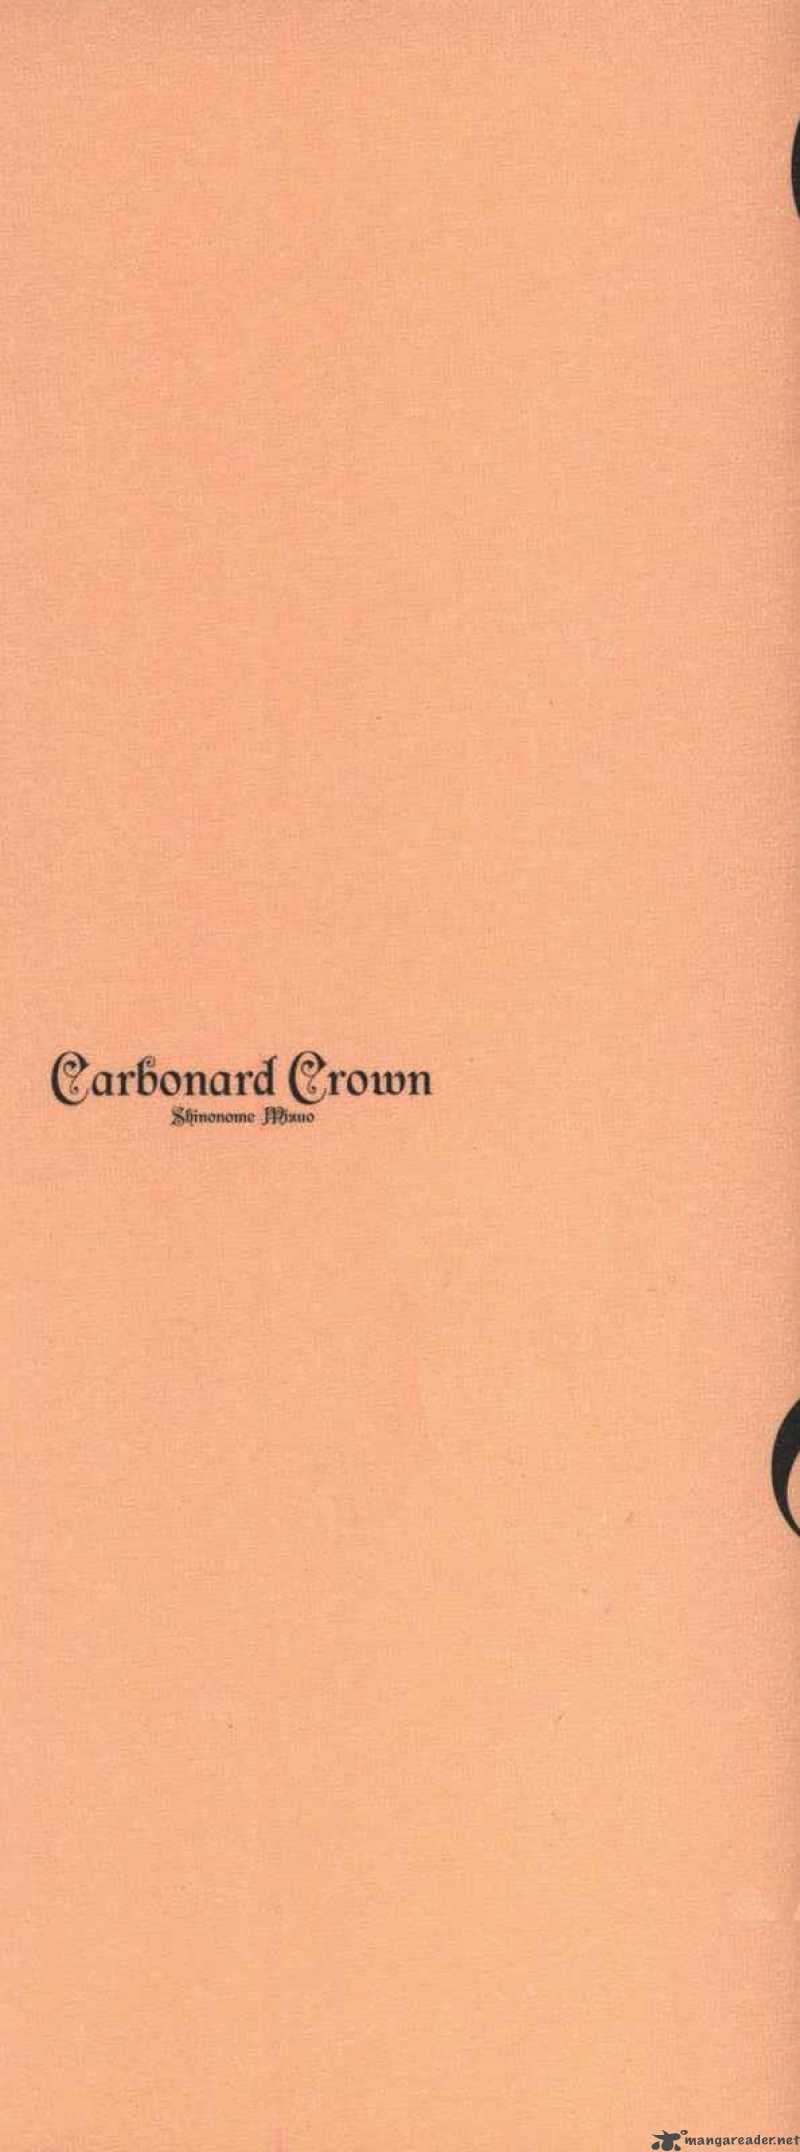 carbonard_crown_1_3